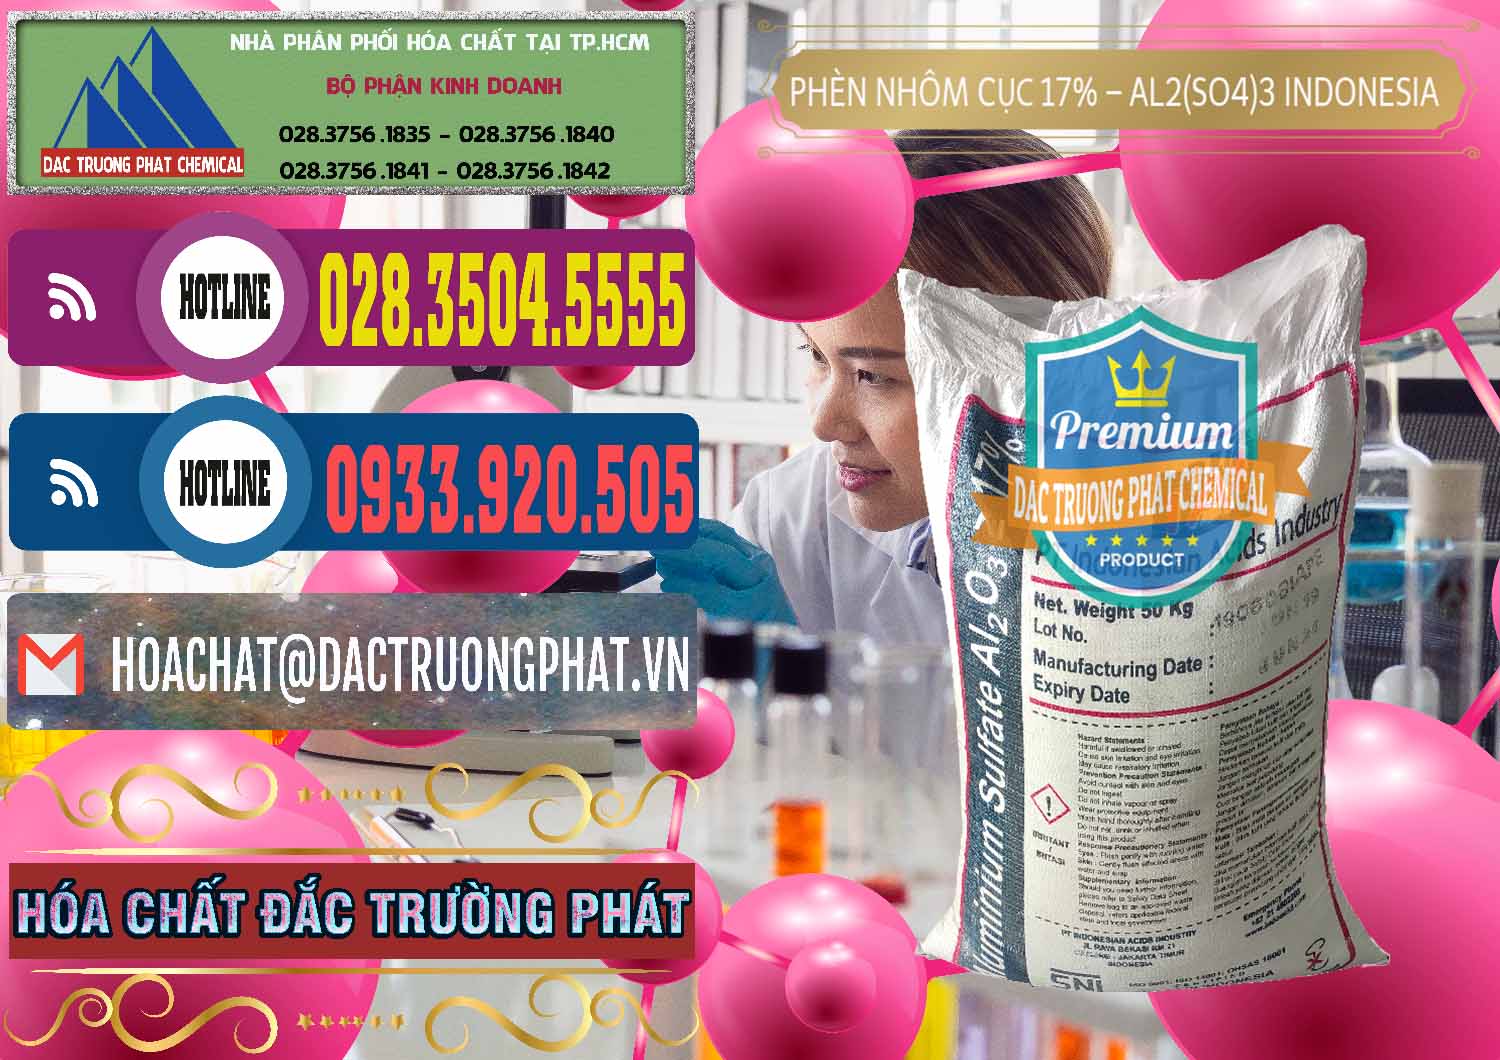 Nơi chuyên phân phối & bán Phèn Nhôm Cục - Al2(SO4)3 17% bao 50kg Indonesia - 0113 - Chuyên cung cấp & phân phối hóa chất tại TP.HCM - muabanhoachat.com.vn